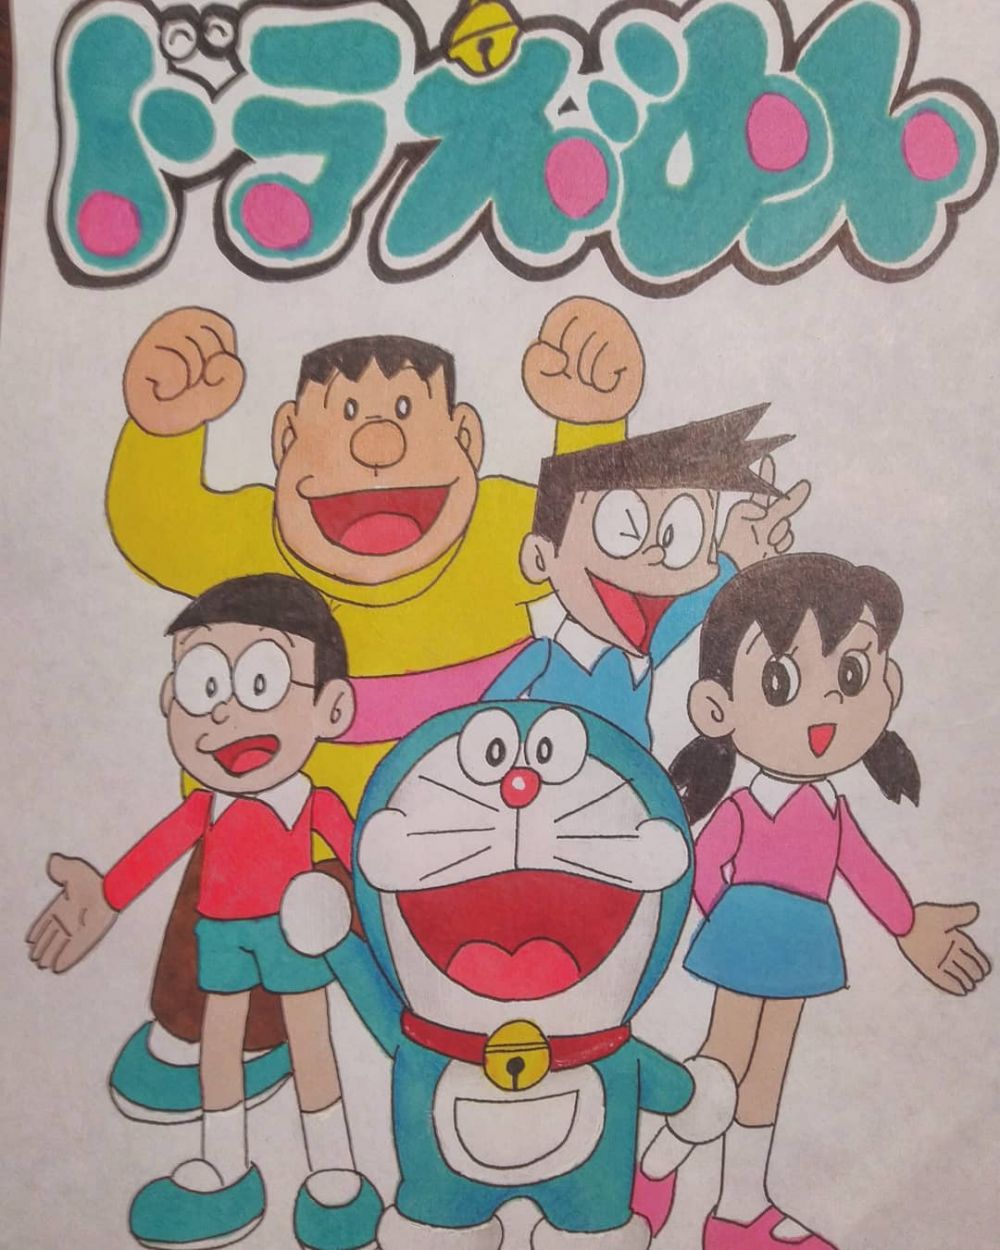 30 Kata Kata Cinta Nobita Dalam Kartun Doraemon Menyentuh Hati